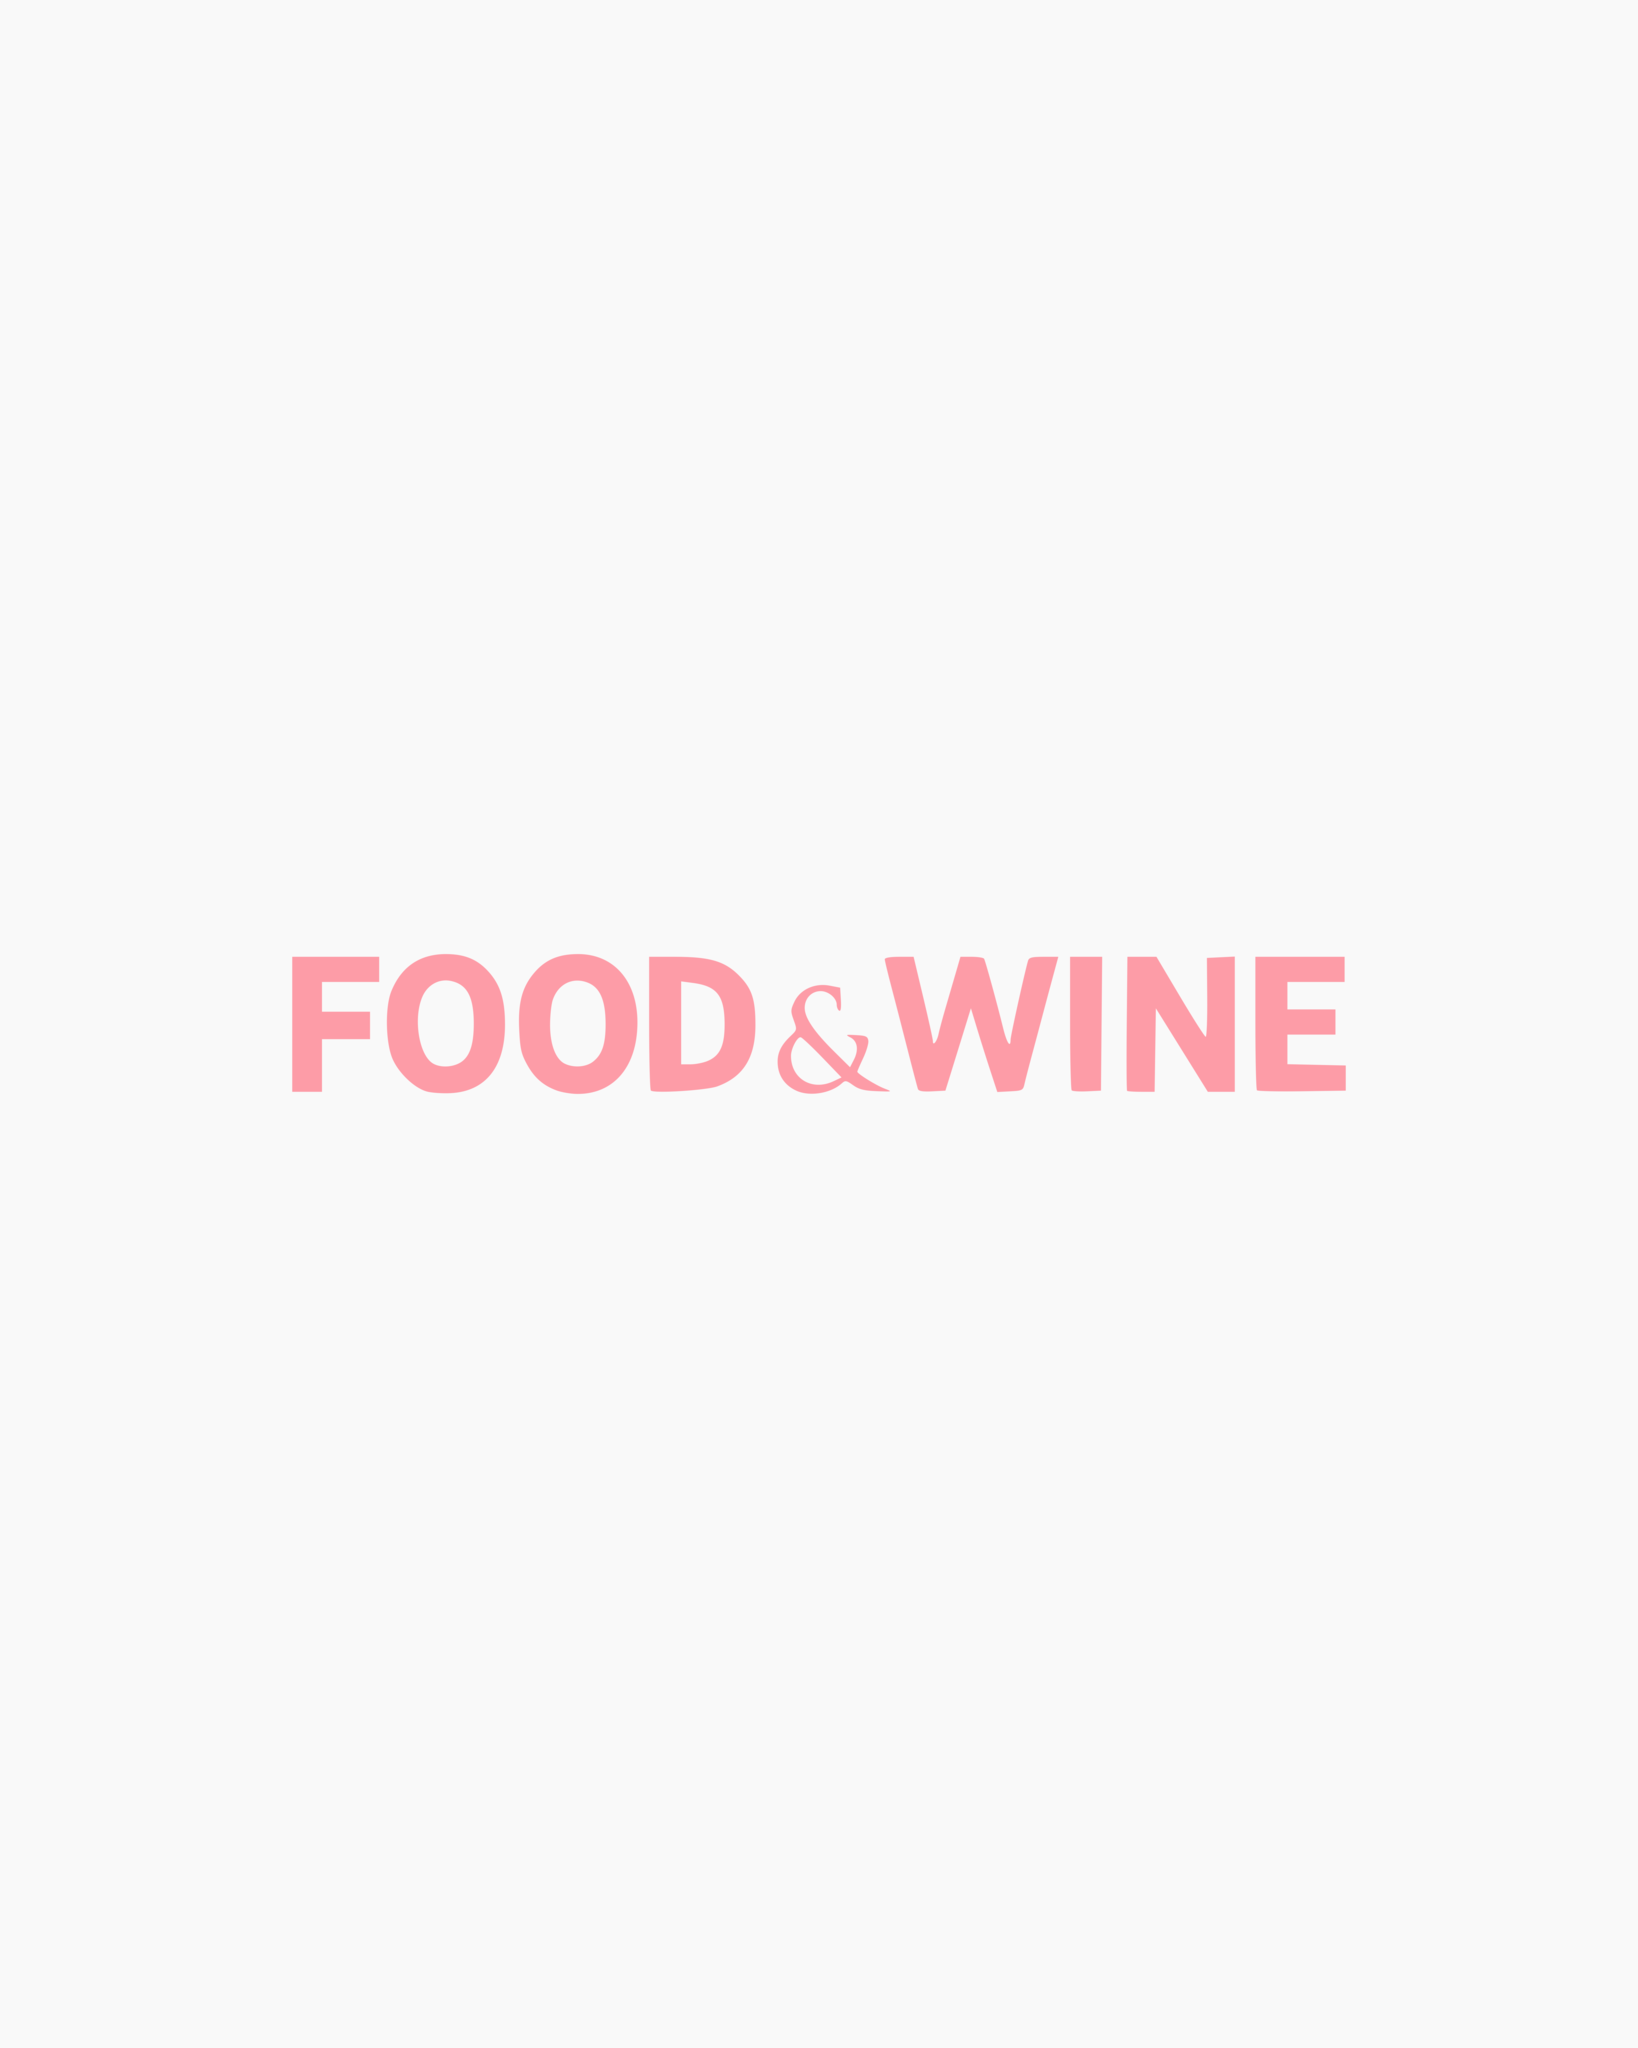 FOOD & WINE